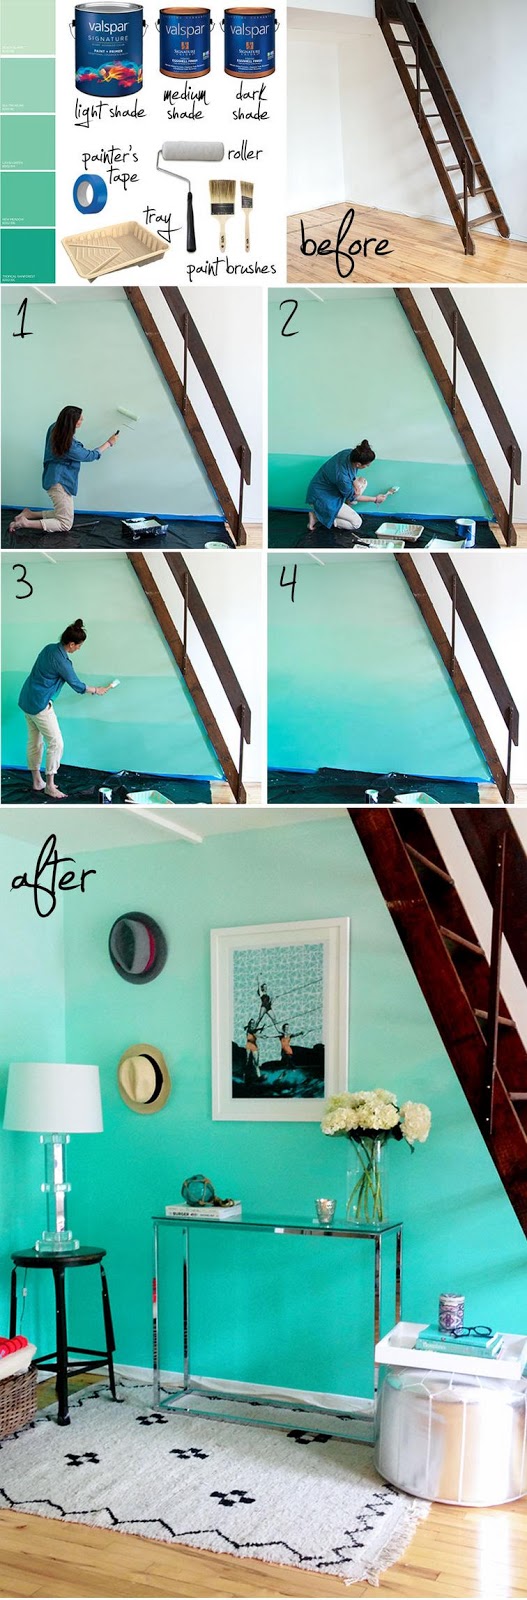 Faites de votre maison élégante du sol au plafond avec un sentiment fraîchement peint!